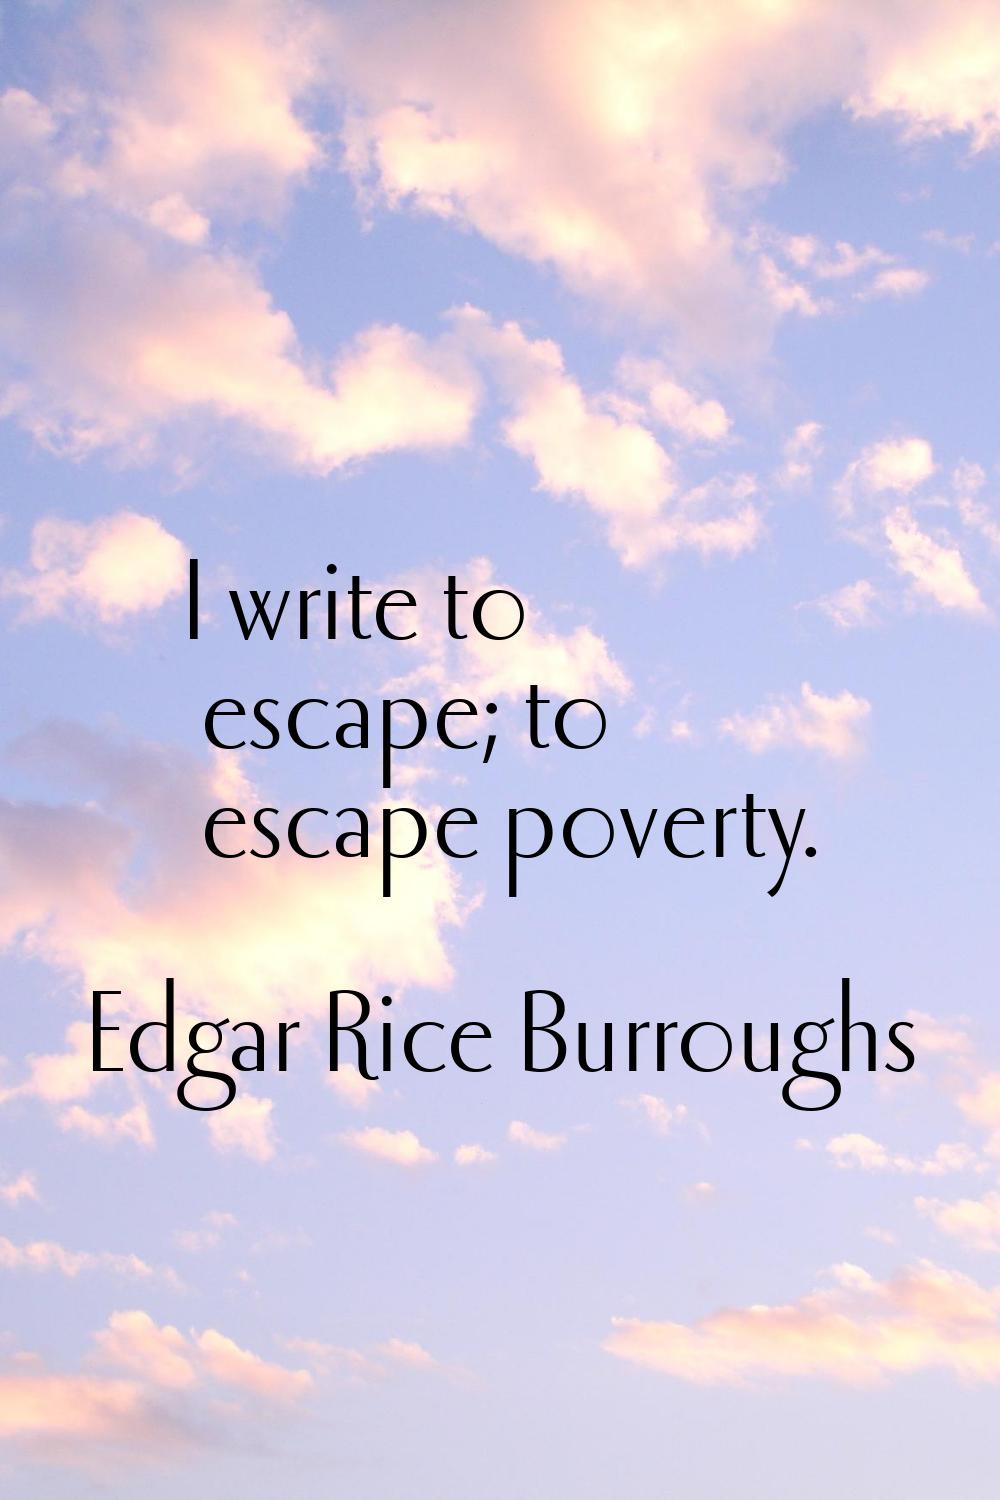 I write to escape; to escape poverty.